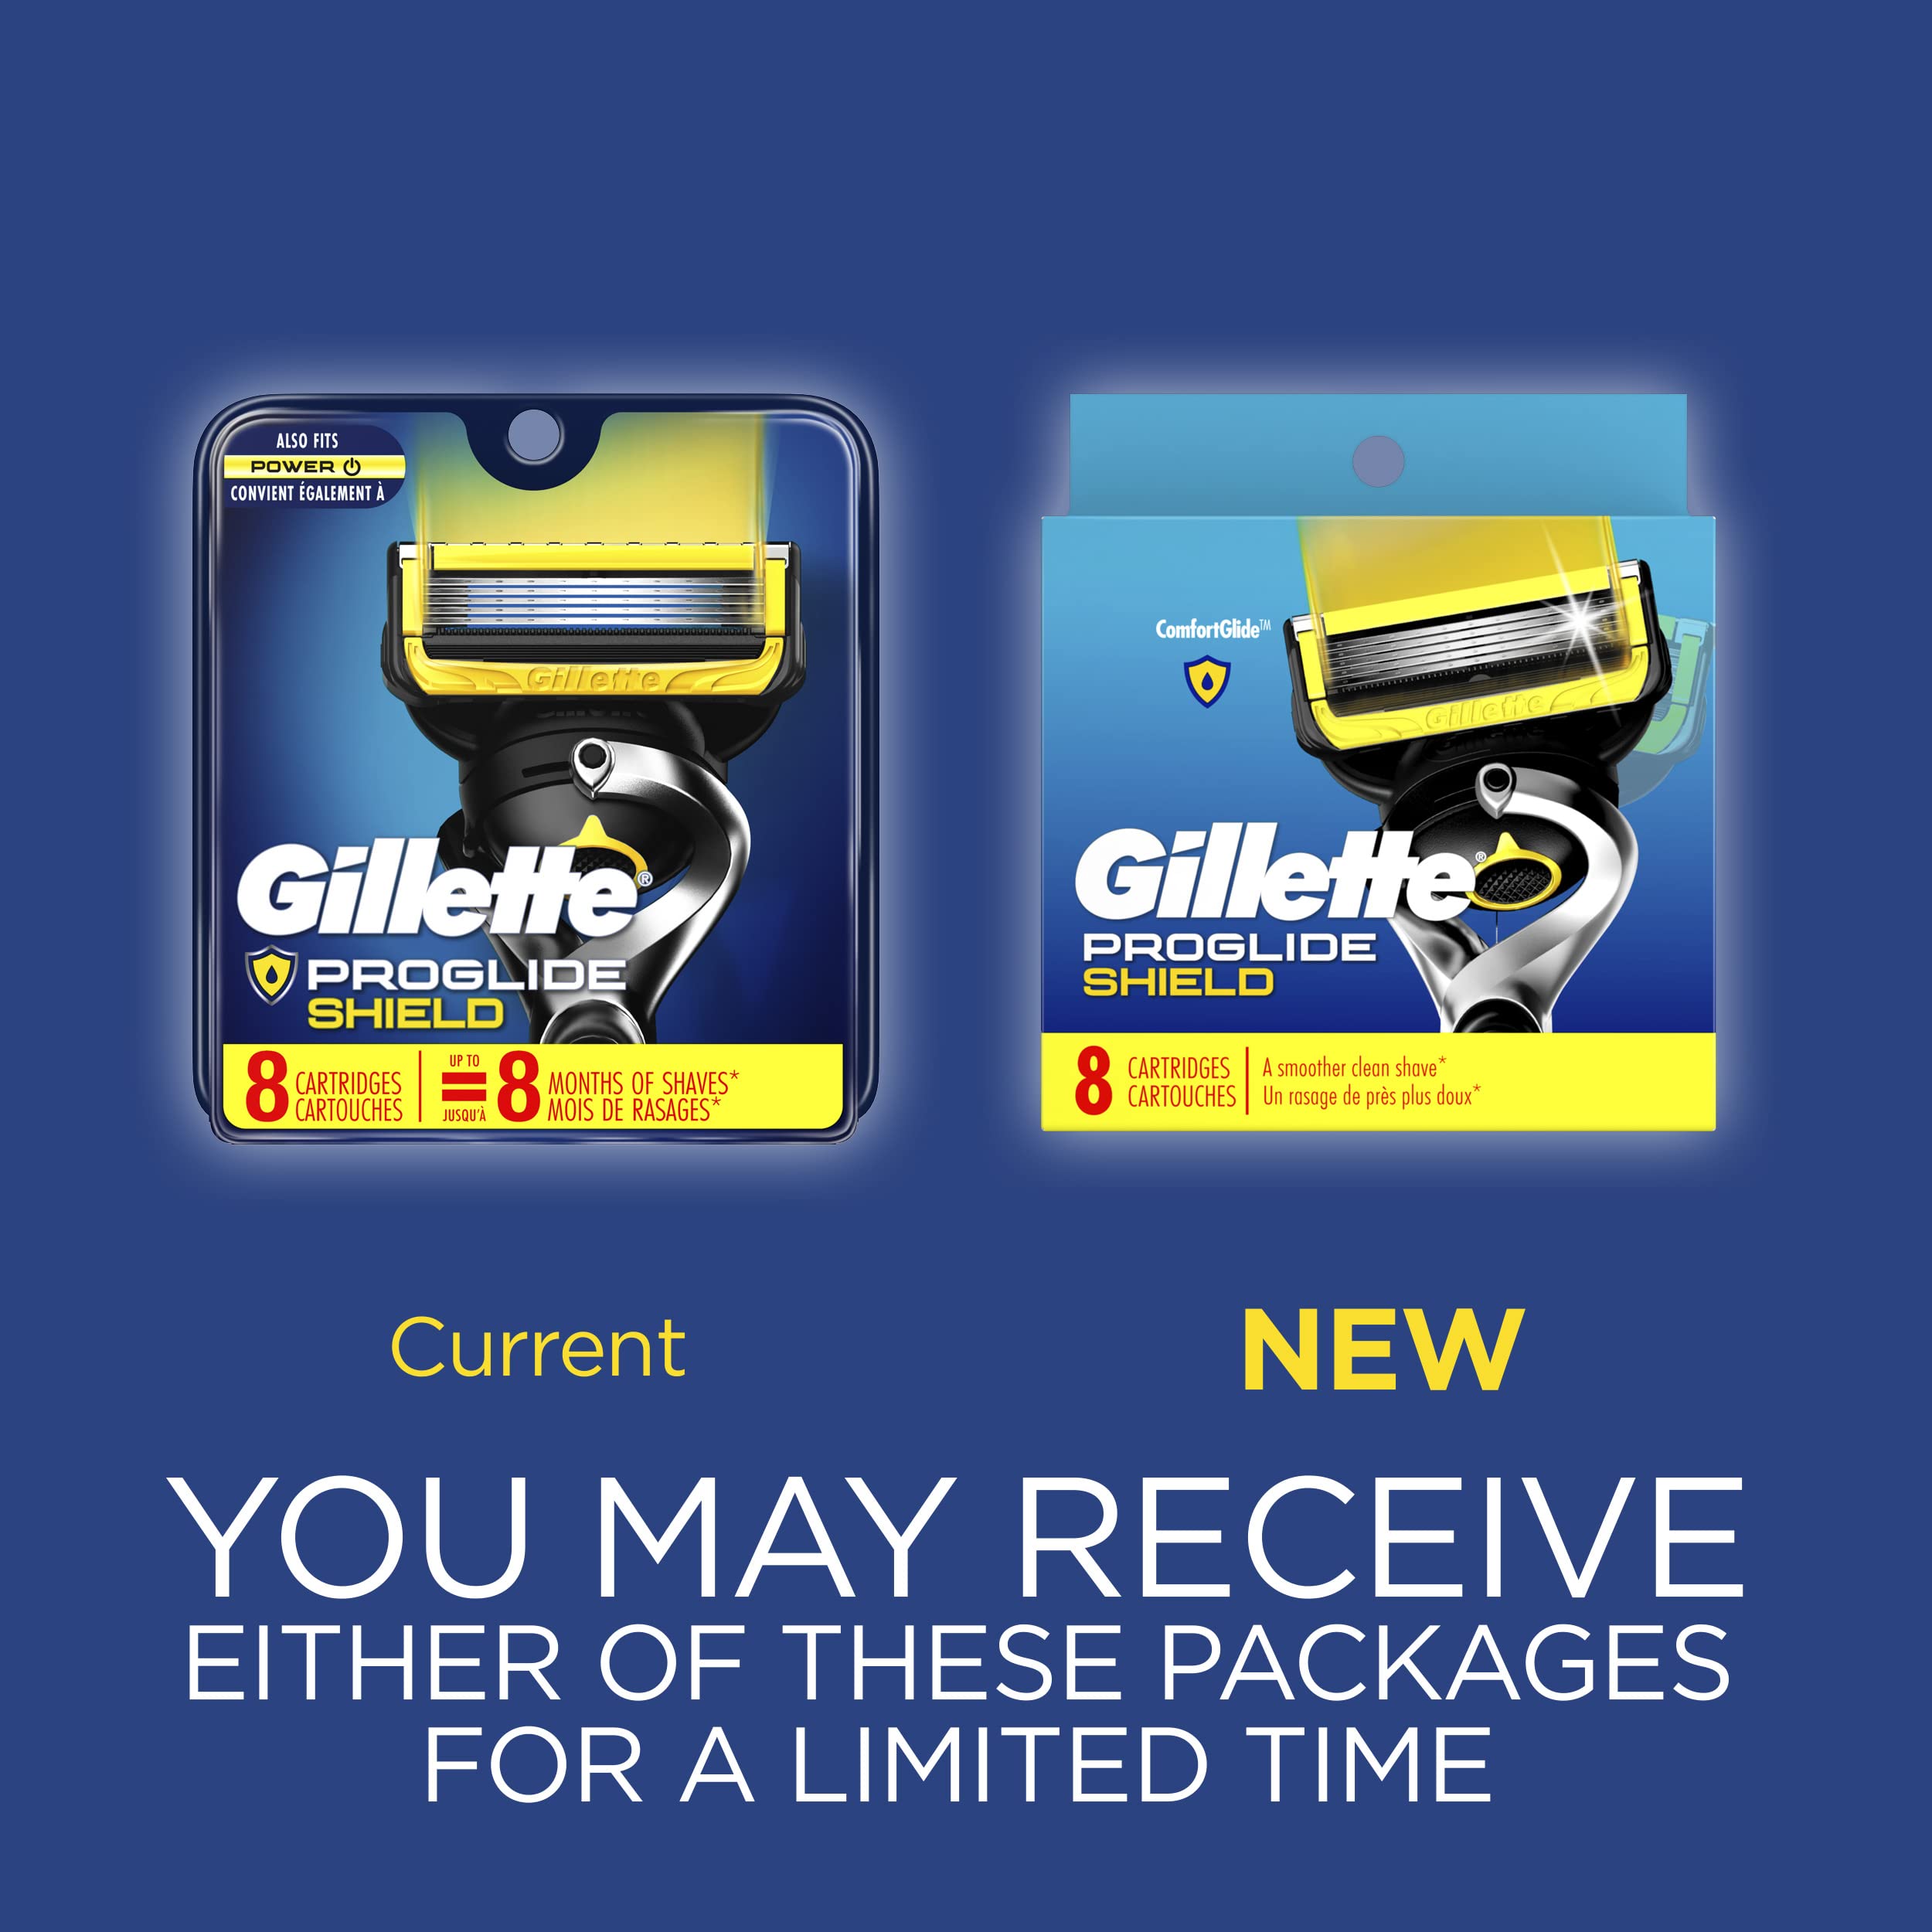 Gillette ProGlide Shield Razor Refills for Men, 8 Blade Refills